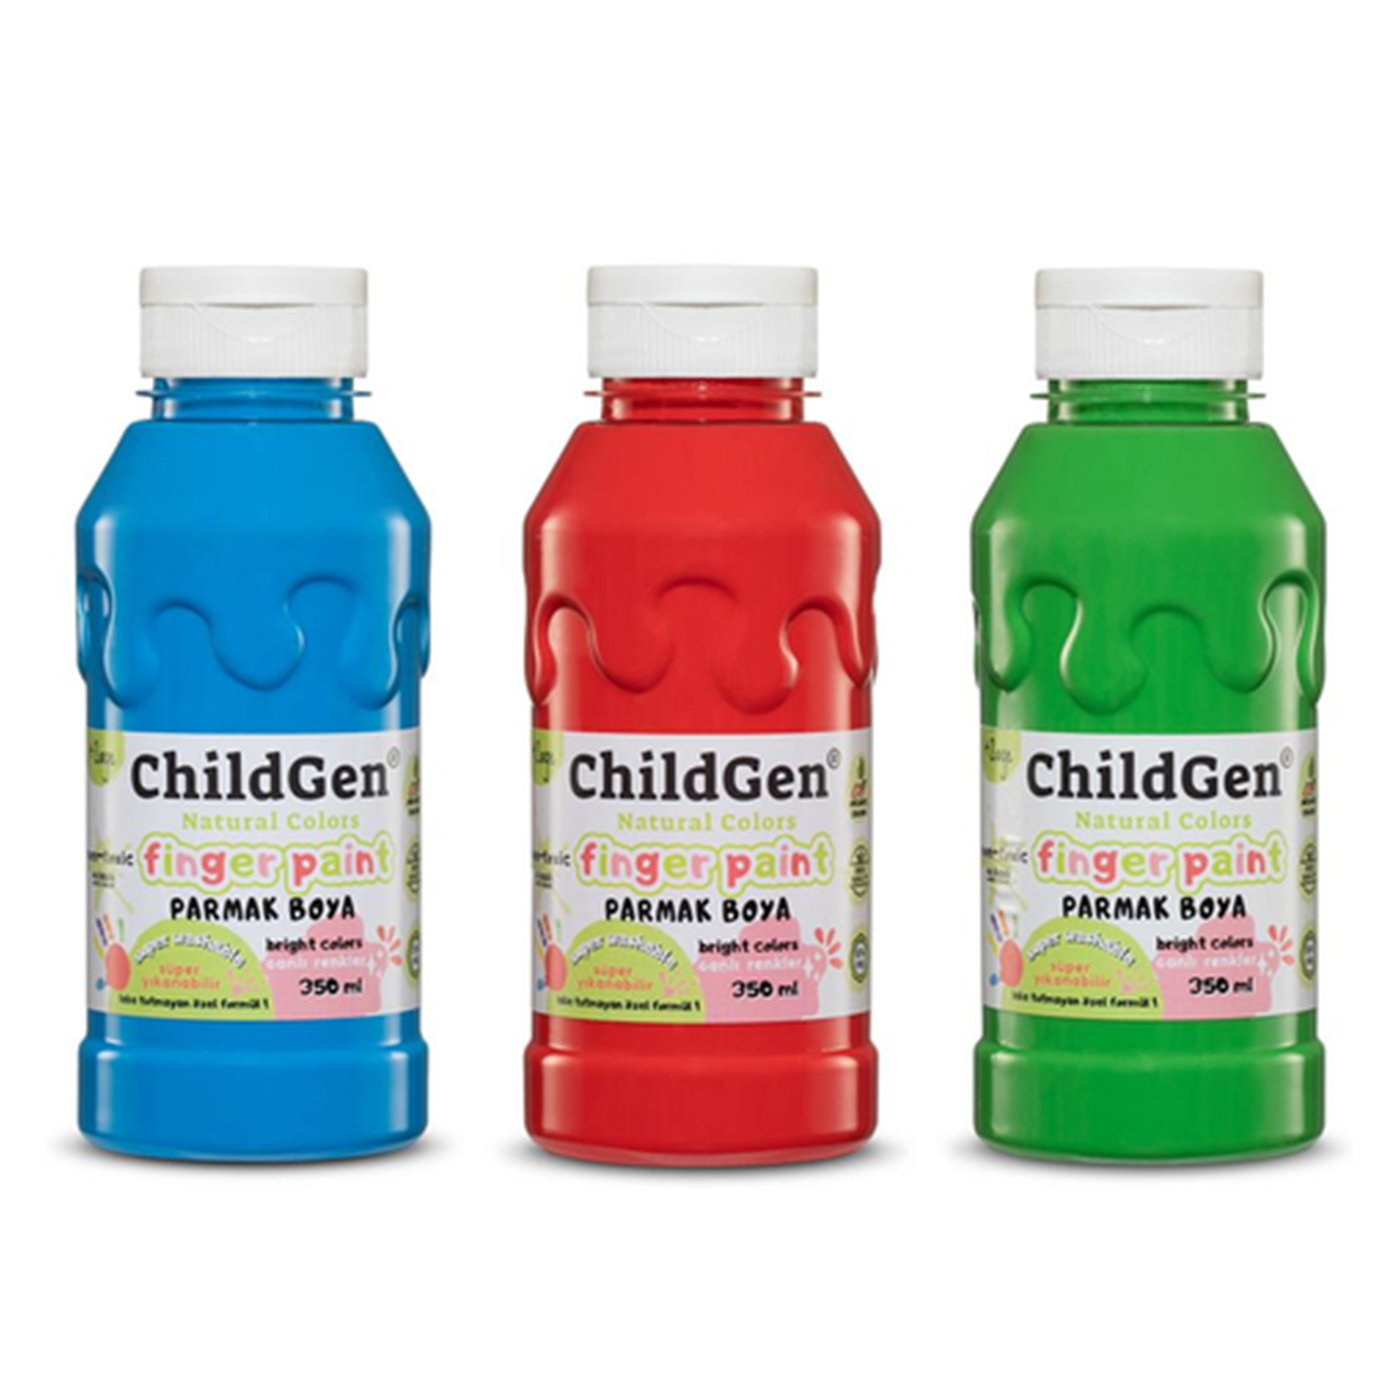 CHILDGEN Childgen Süper Yıkanabilir 3'lü Parmak Boya (350 ml x 3) Mavi Yeşil Kırmızı